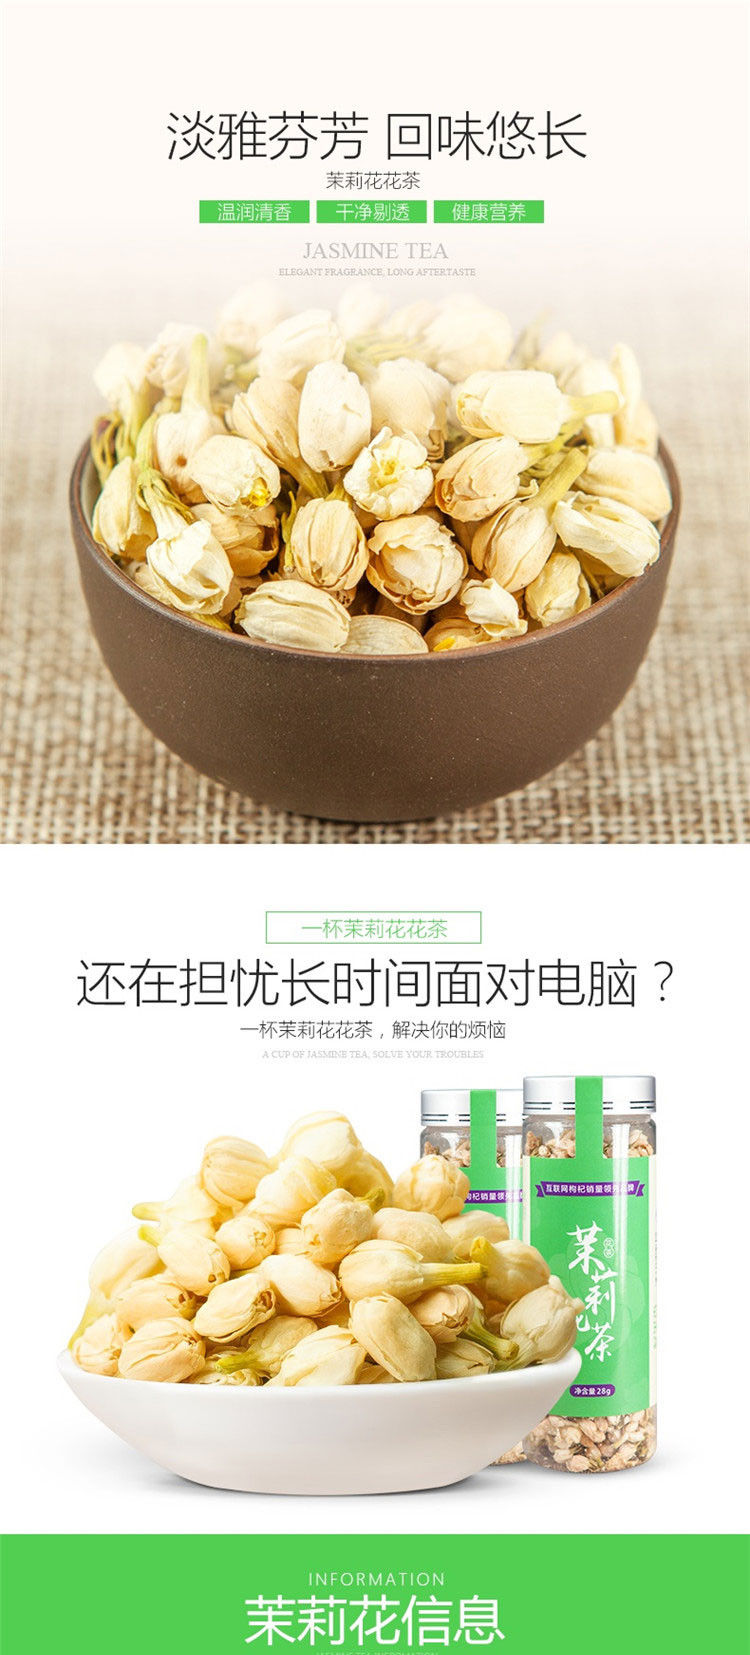 杞里香 浓香型茉莉花茶 28g罐装 产自广西茉莉之乡